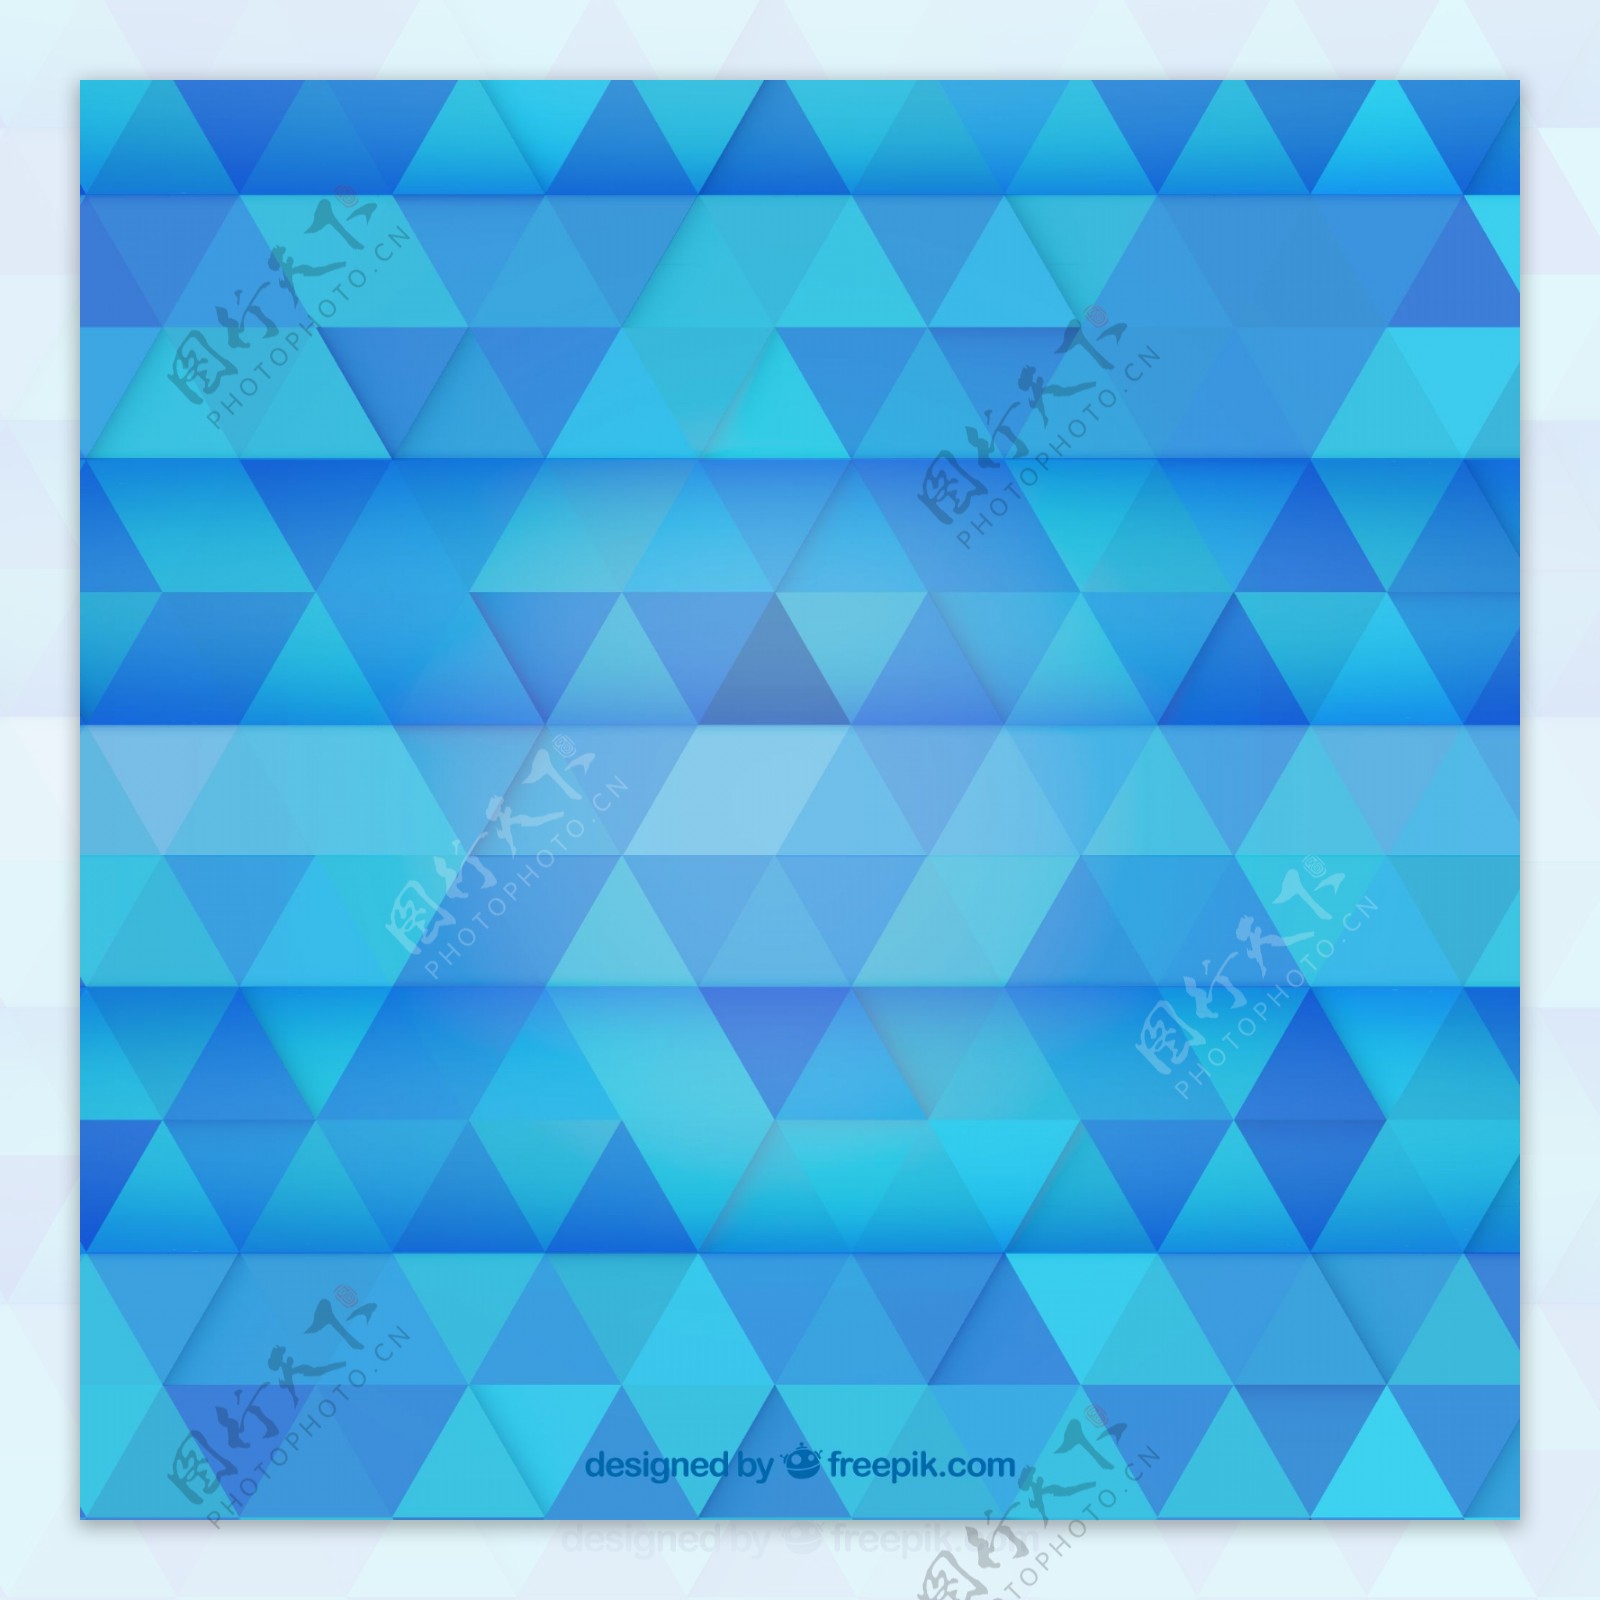 蓝色三角形拼接背景矢量素材图片